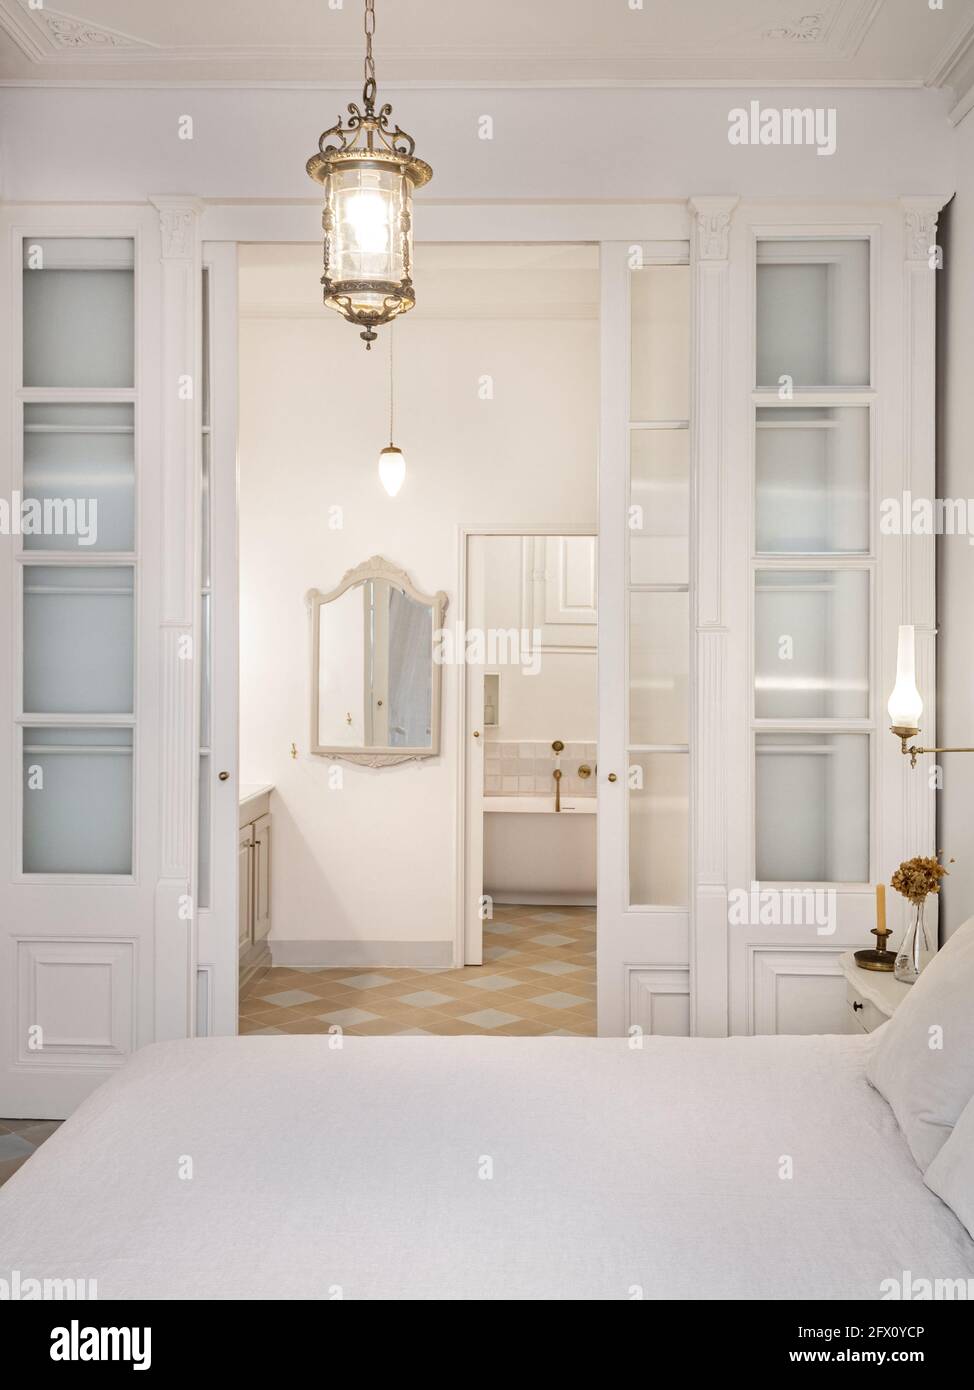 Intérieur de chambre de style rétro ou classique avec lustre vintage. Vue  sur la salle de bains décorée dans des tons de beige avec zone de baignoire  Photo Stock - Alamy